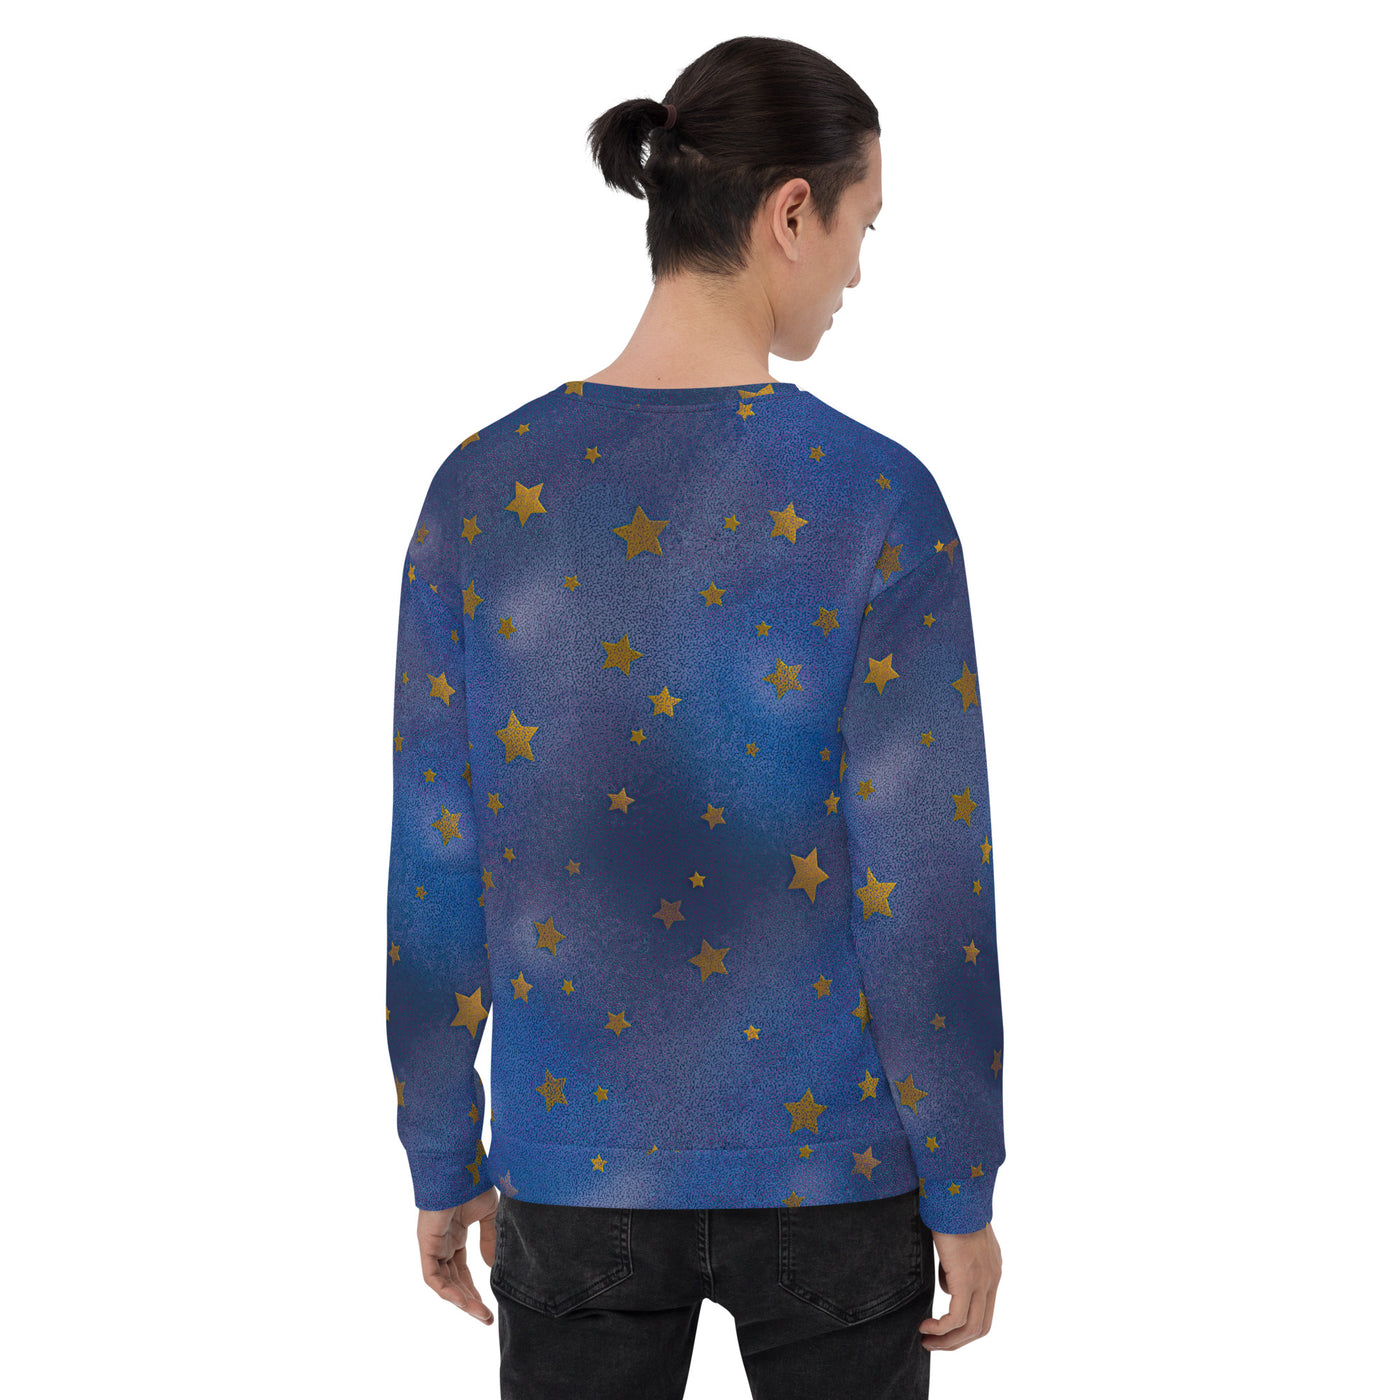 Stars on Blue - Sweatshirt